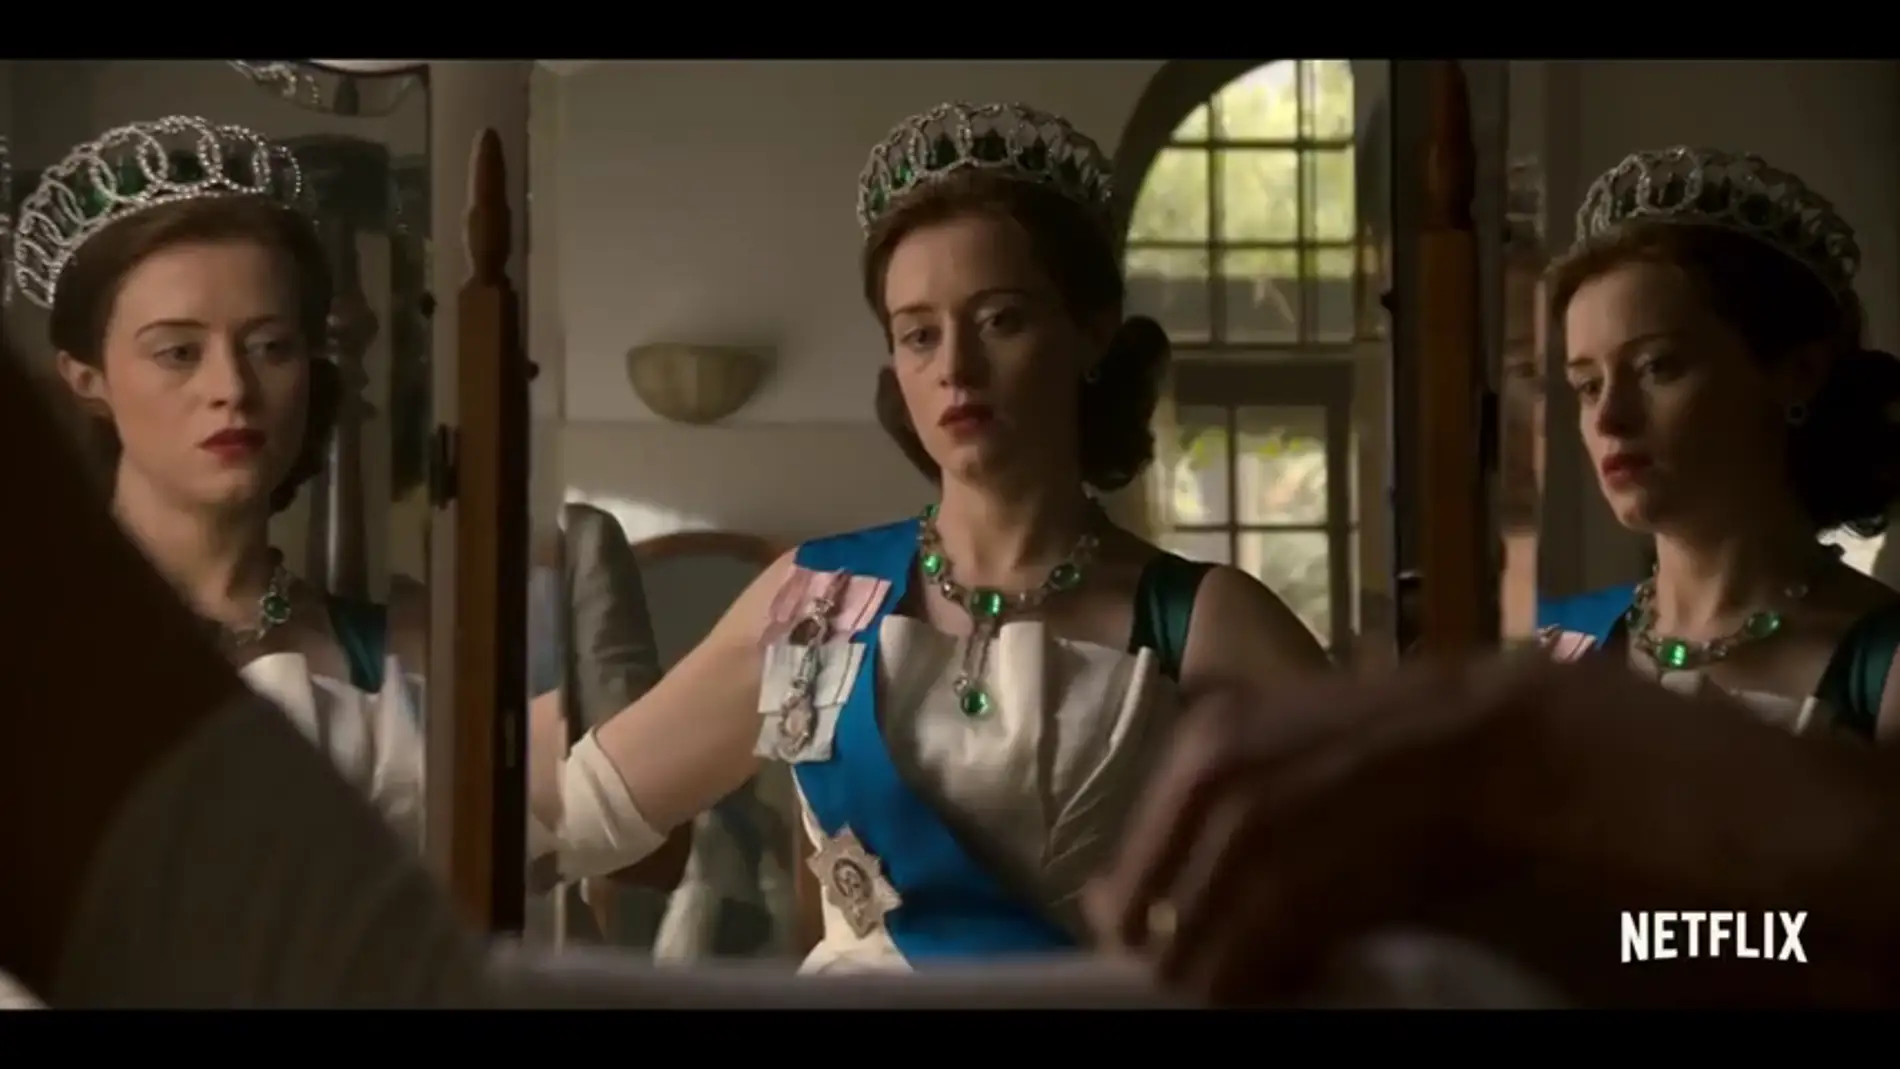 Se derrumba el imperio (y matrimonio) de la reina en la segunda temporada de 'The Crown'